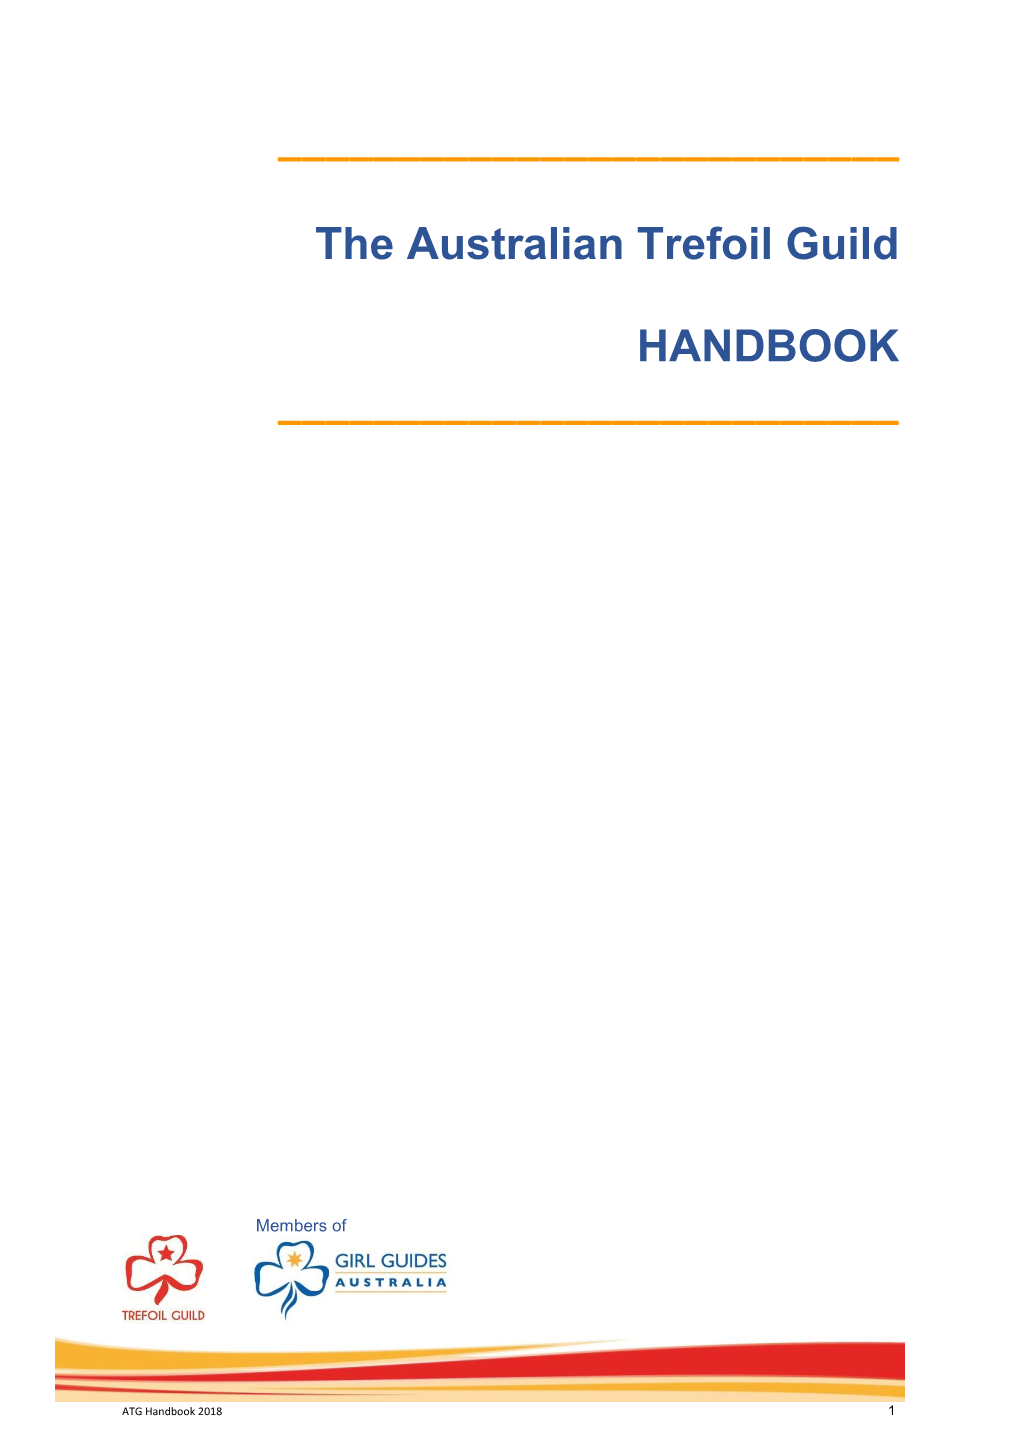 The Australian Trefoil Guild HANDBOOK